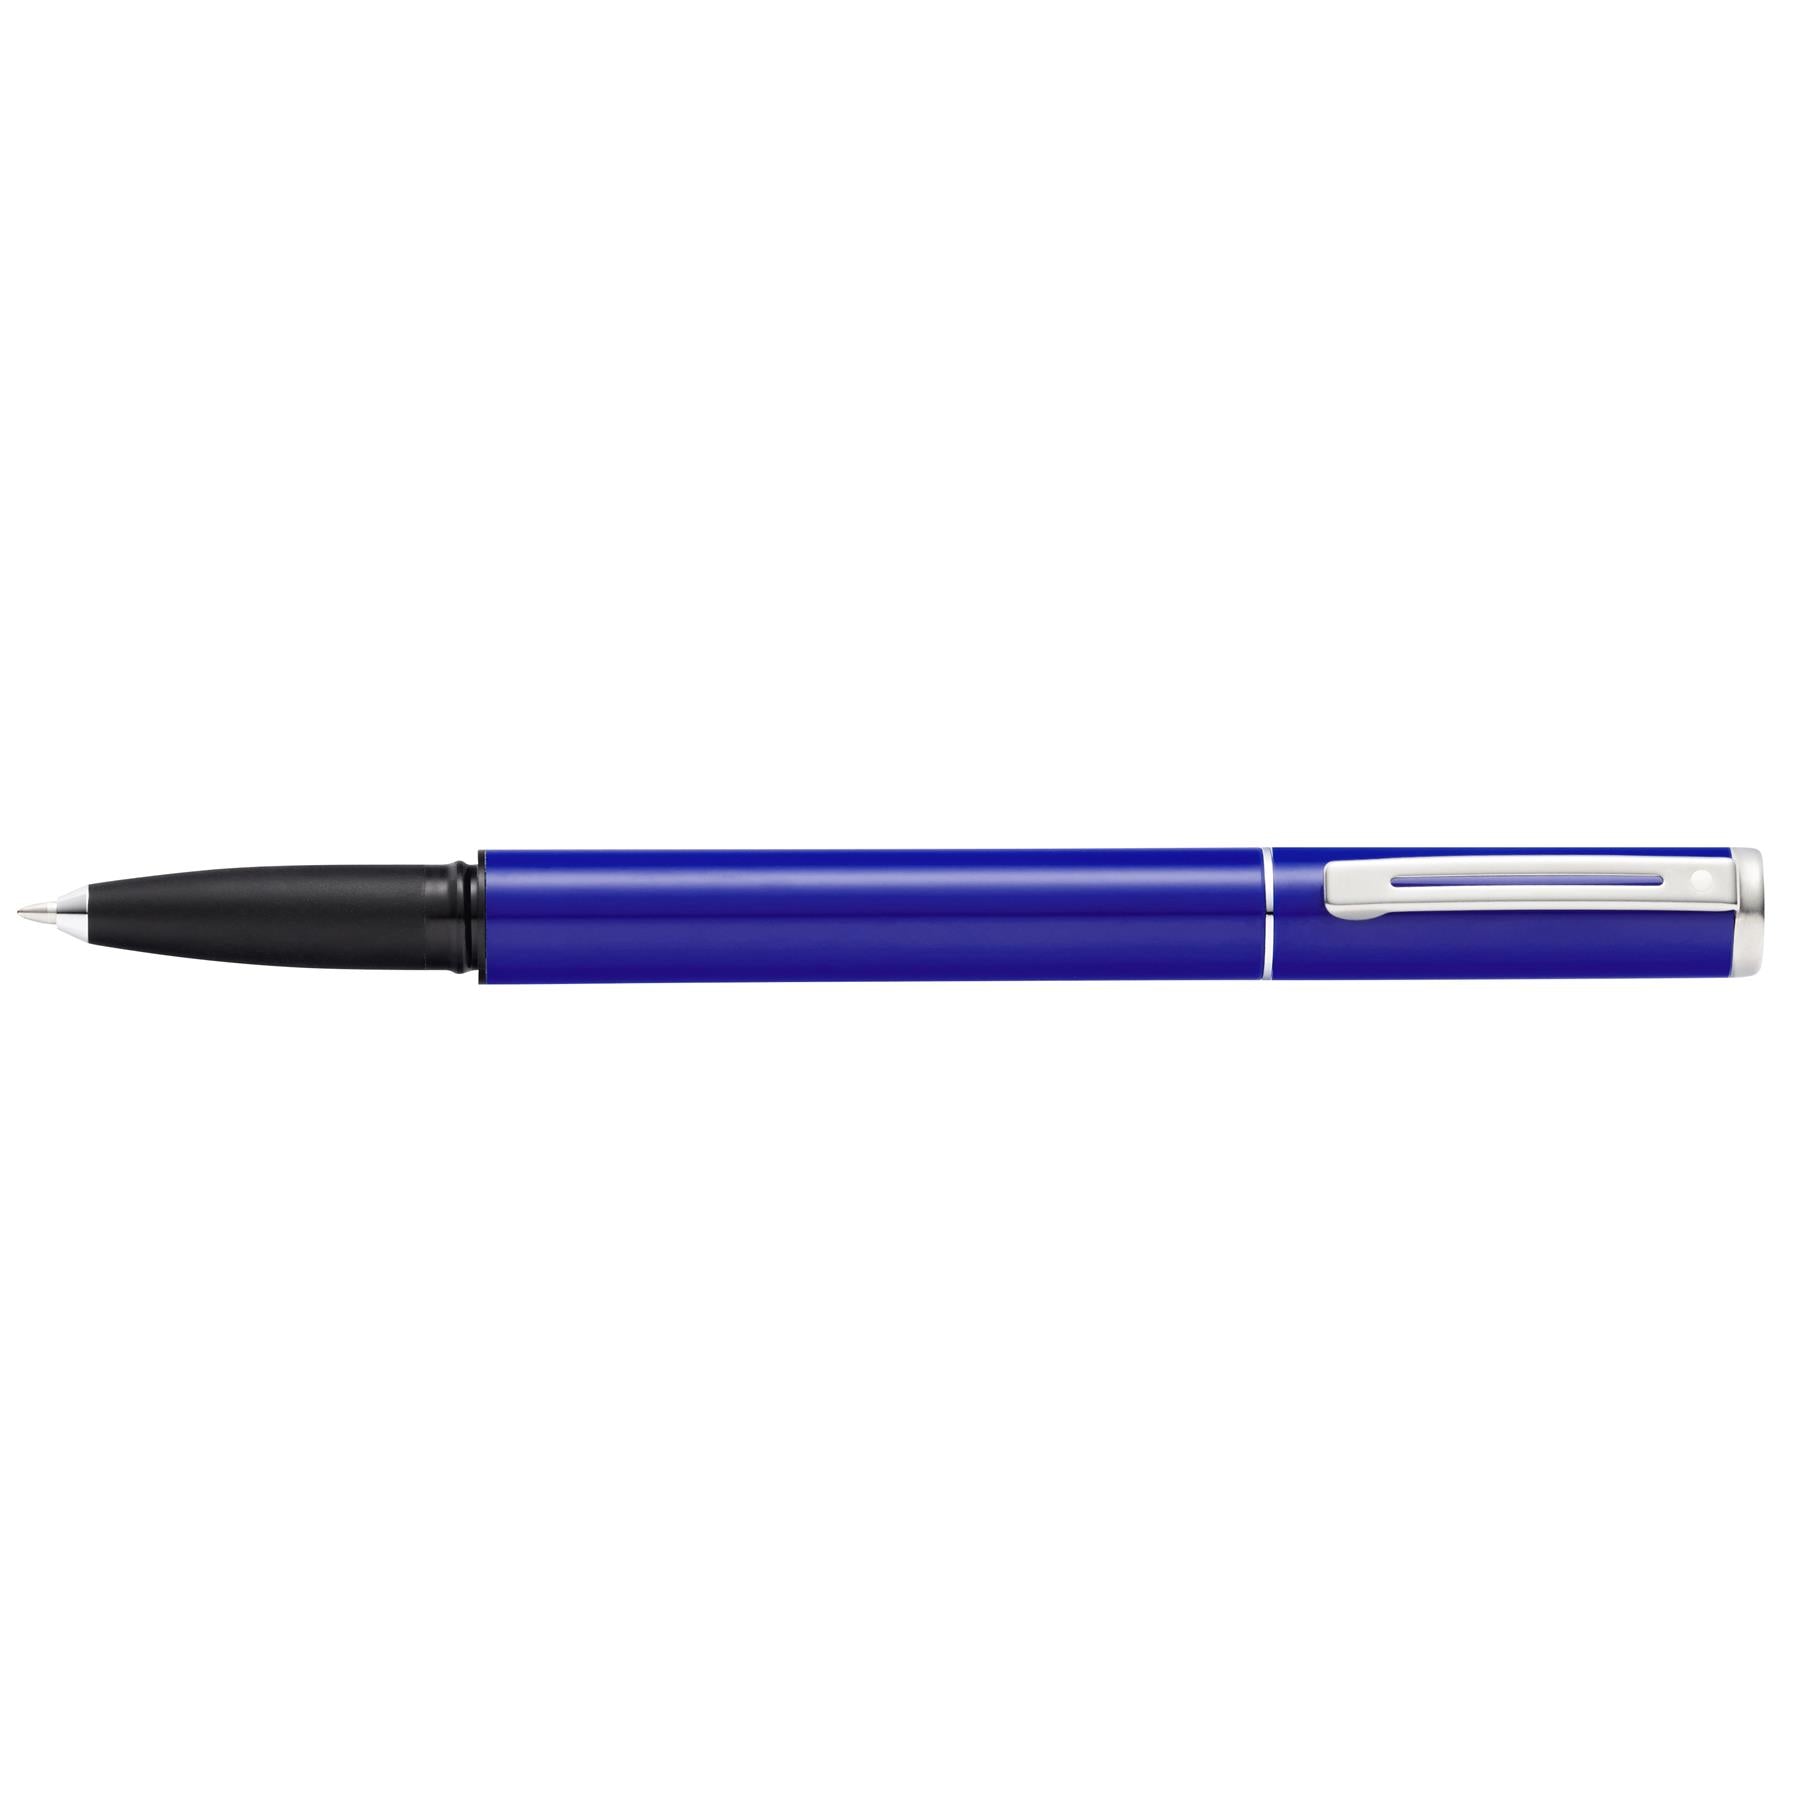 Sheaffer Pop Blue Rollerball Pen Medium Tip with Chrome Trim - Black Ink E1920151